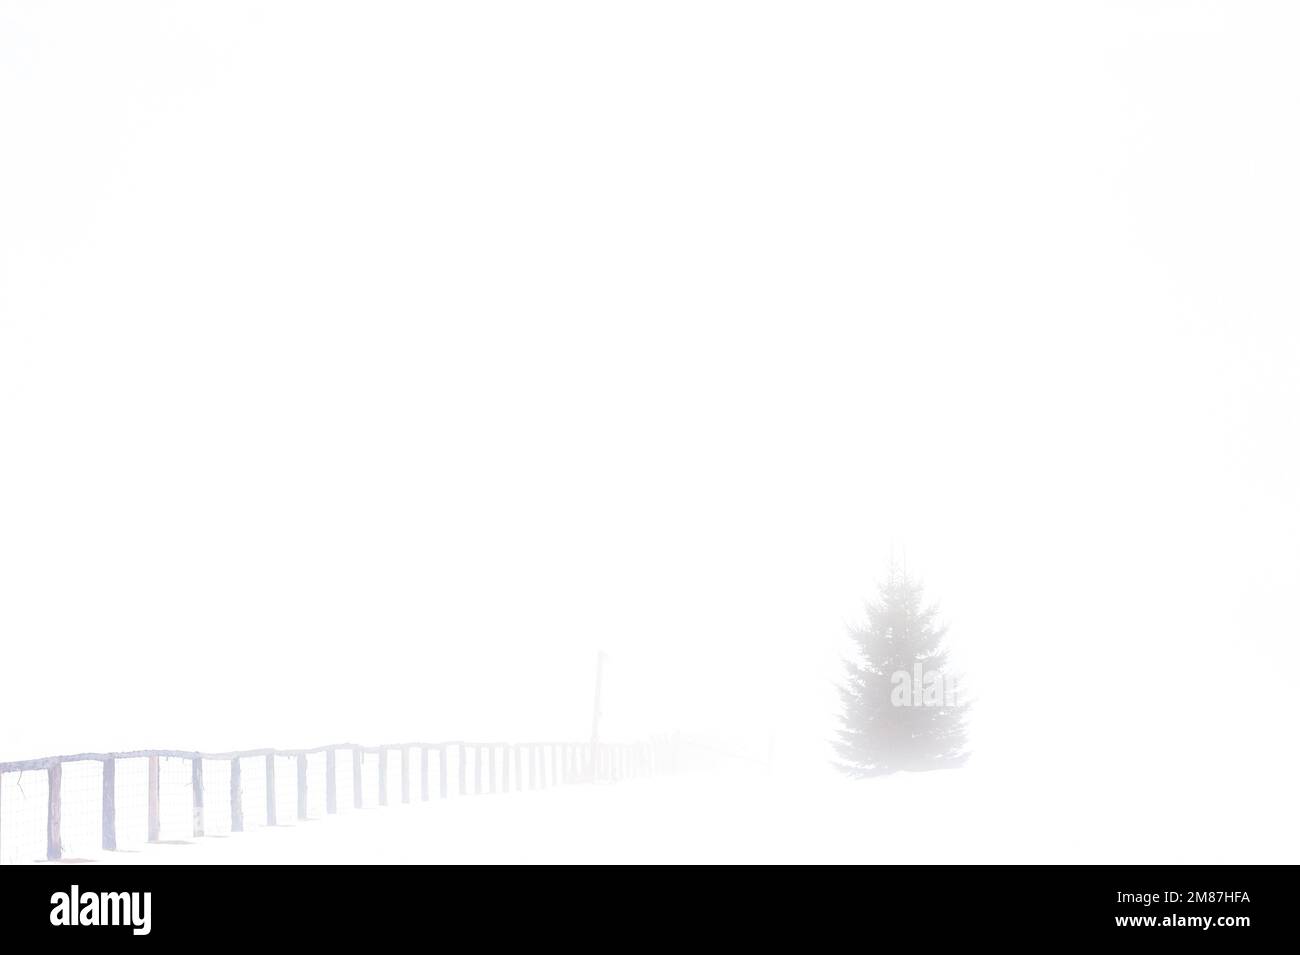 Zaunlinie verschwindet bei dickem Nebel. Ein immergrüner Baum ist größtenteils durch einen dicken Nebel verborgen. Stockfoto